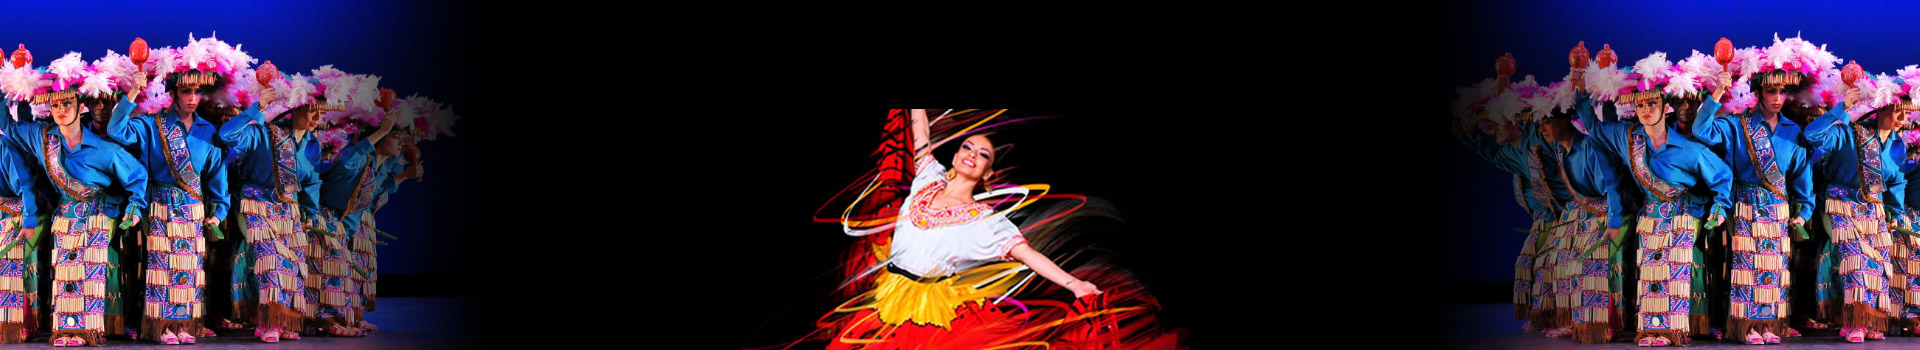 Ballet Folklórico de México tickets at London Coliseum